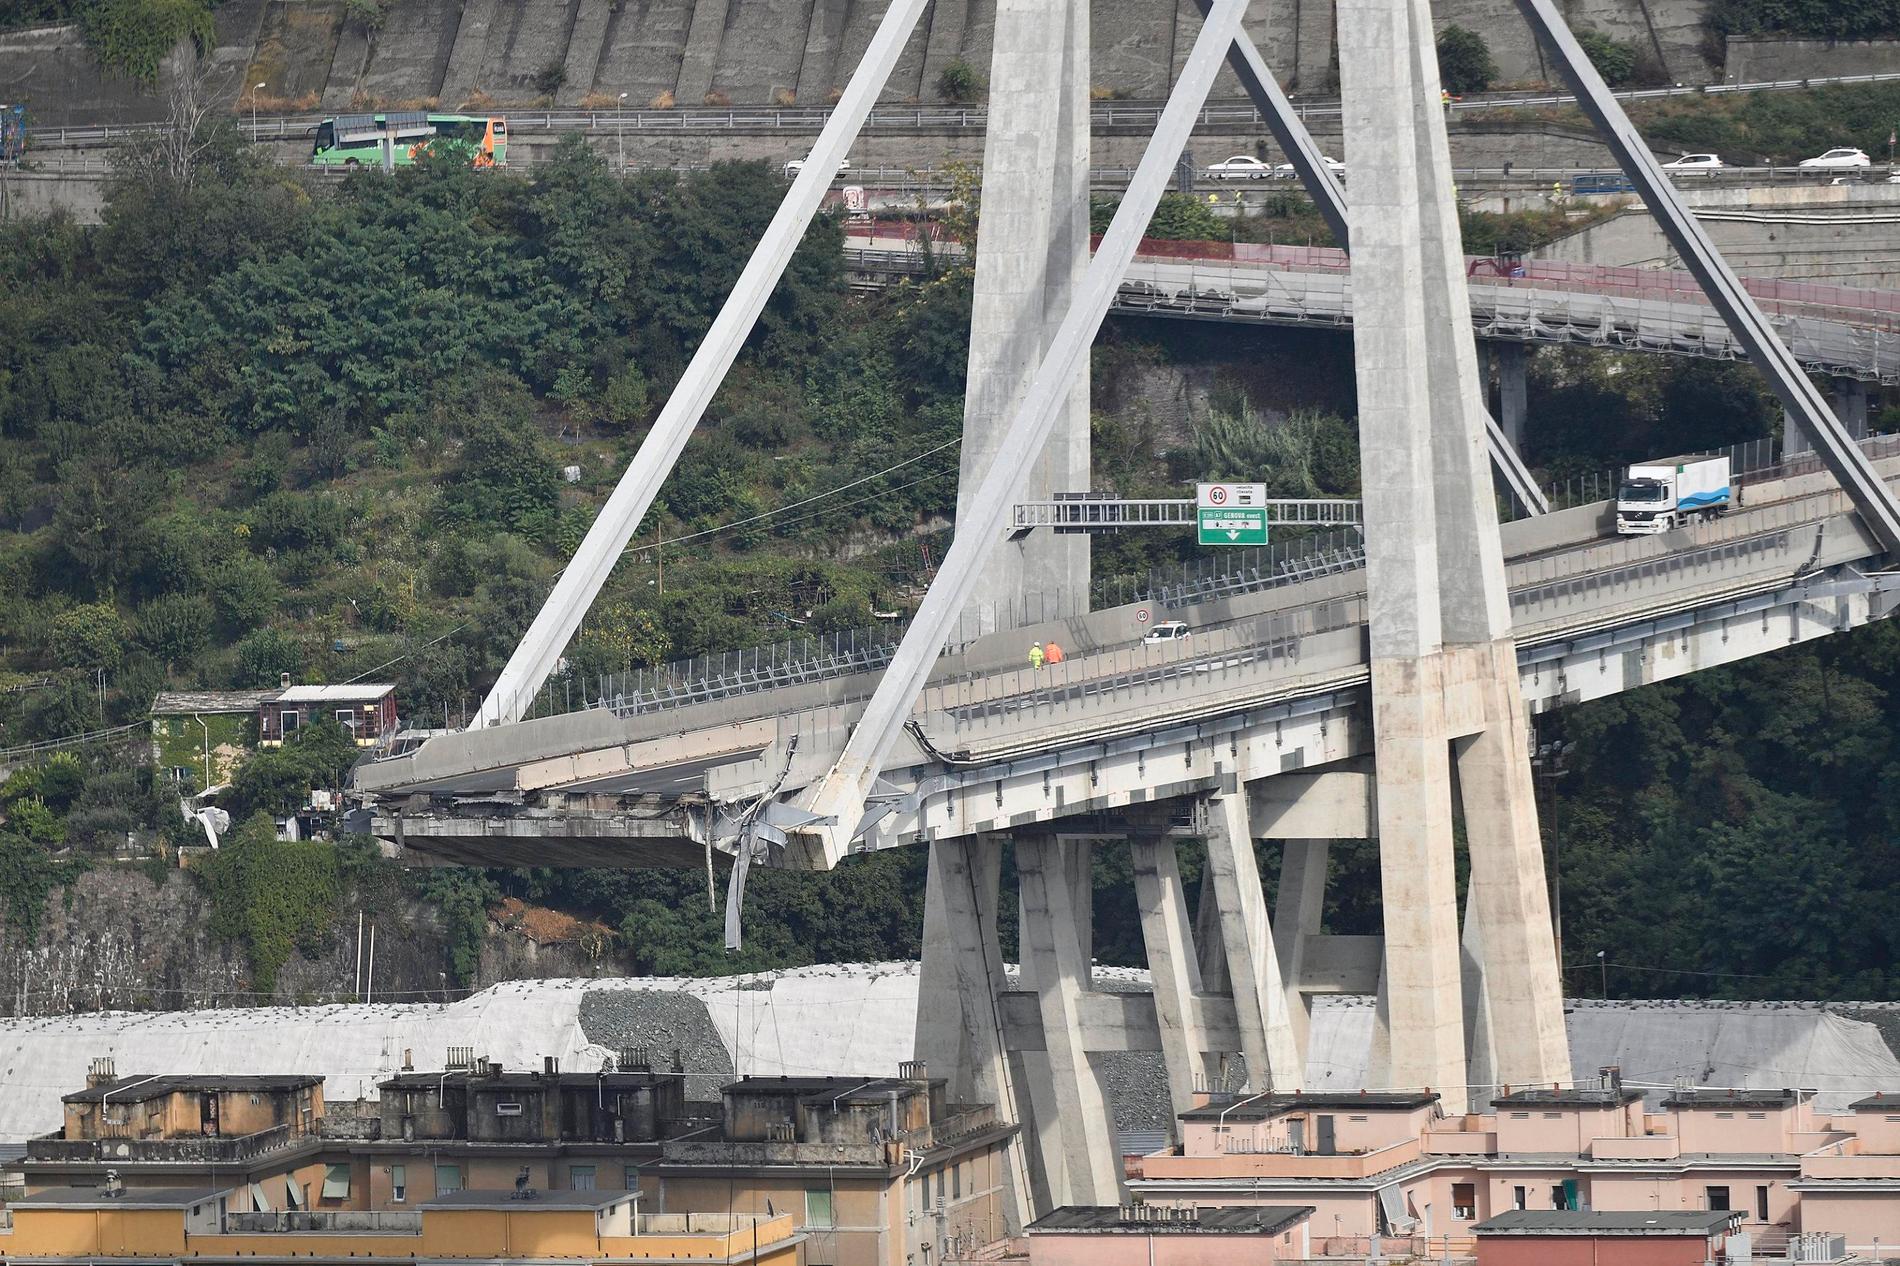 Morandibron i Genua byggdes mellan 1963 och 1967. Vid bärportarna användes Morandis särskilda typ av spännarmerad betong, i stället för de stålvajrar som är praxis i dag vid liknande broar.